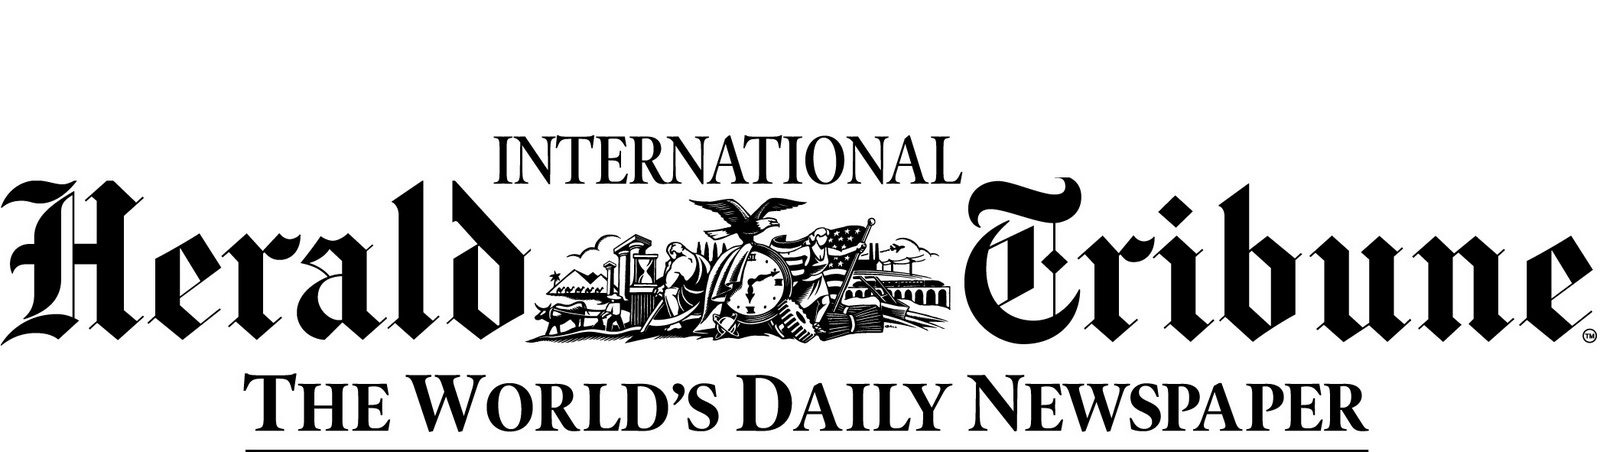 [Intl_Herald_Tribune_logo.jpg]